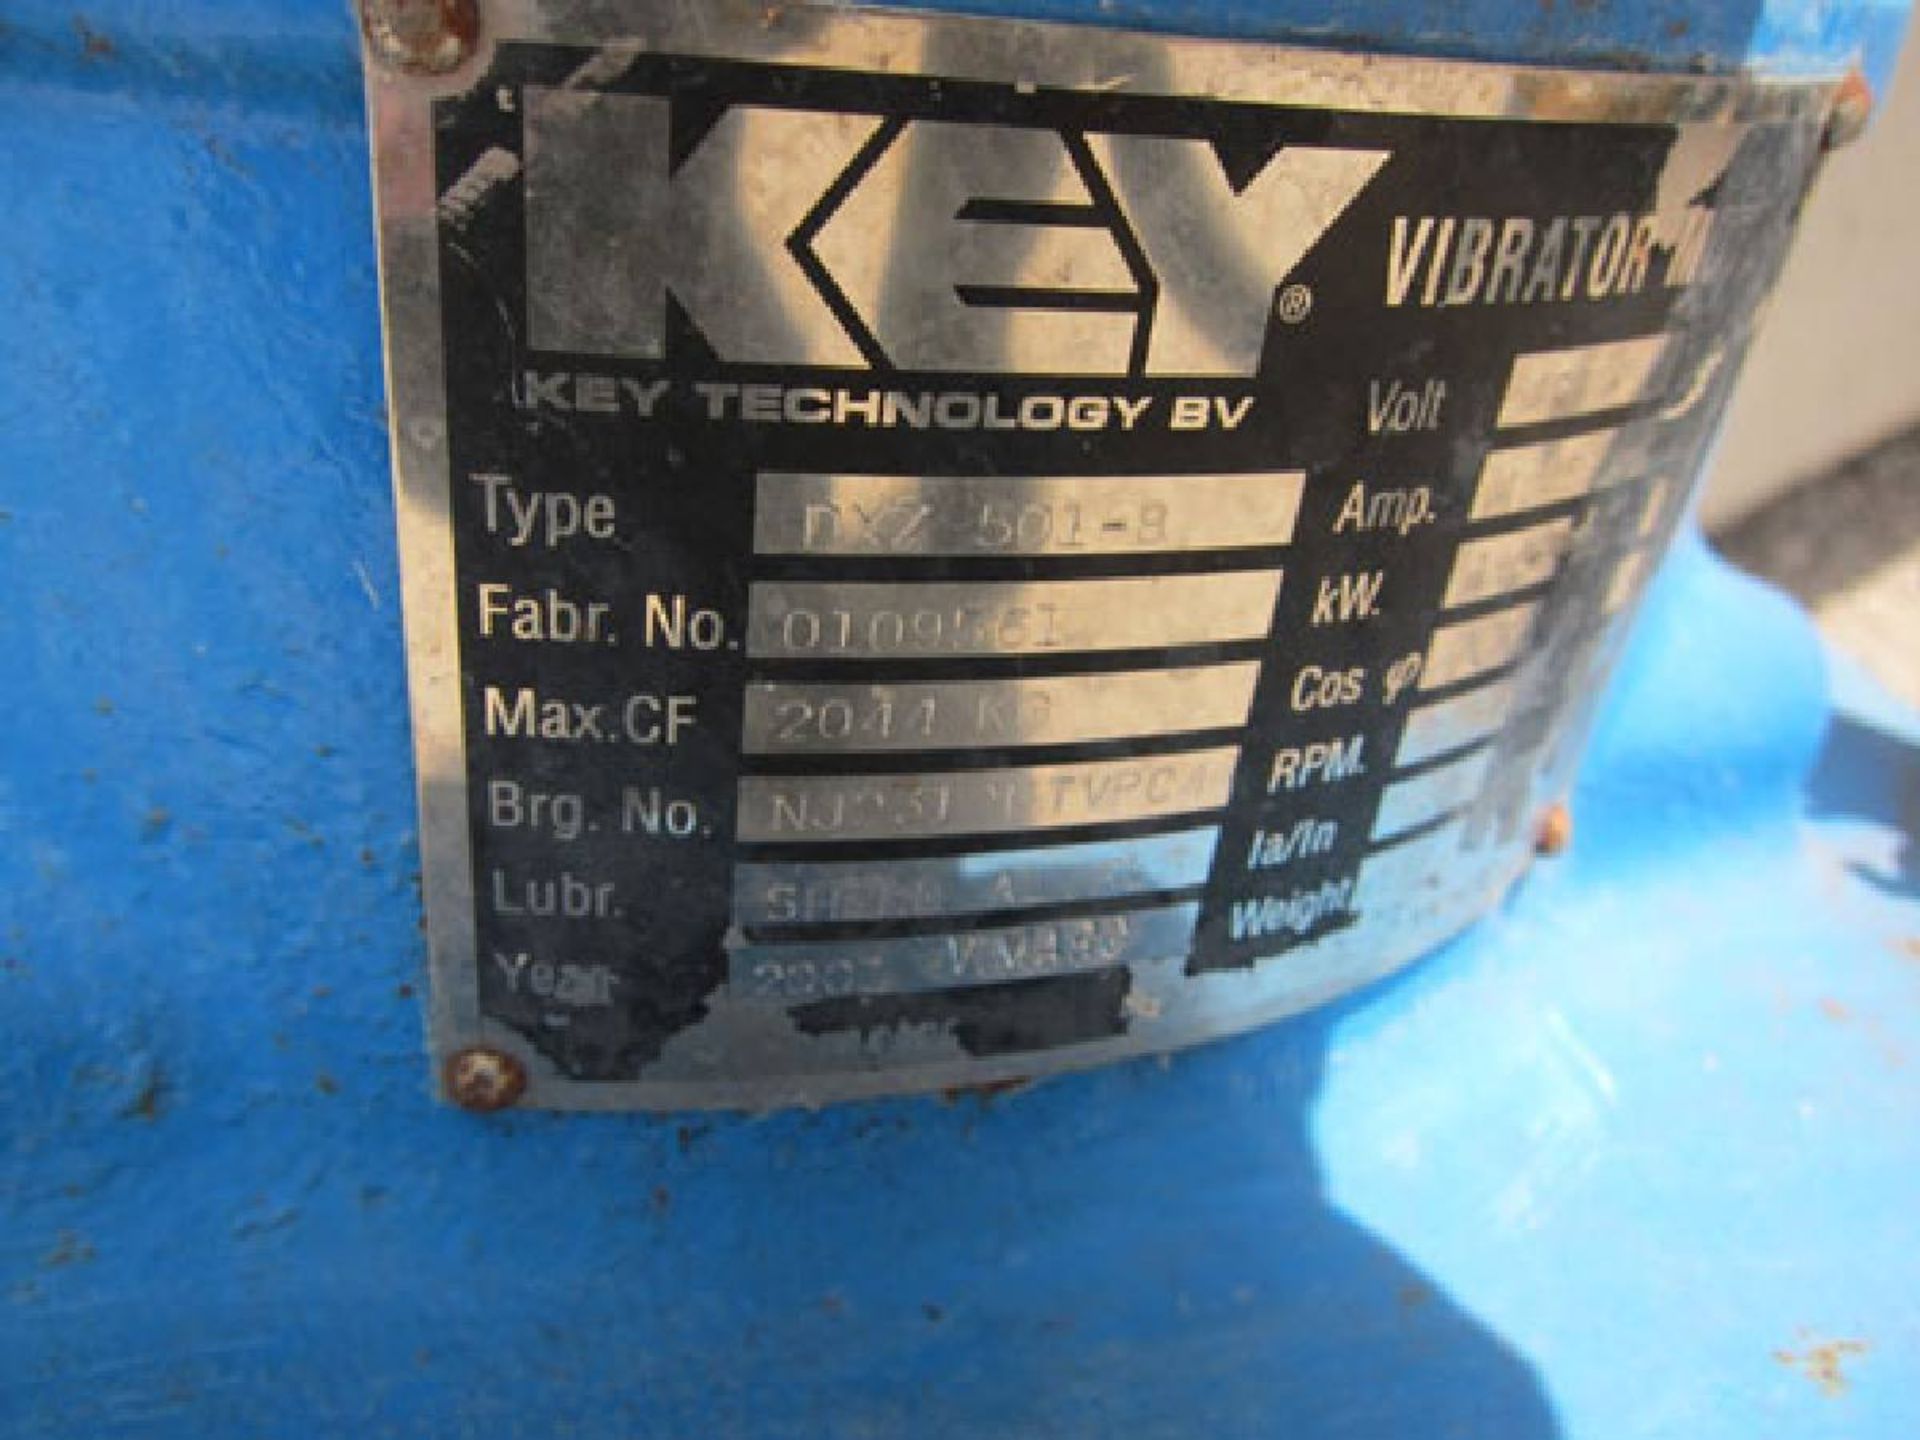 J V Northwest Model 432553-1 5 Lane ISO-FLO Vibratory Conveyor - Image 8 of 14